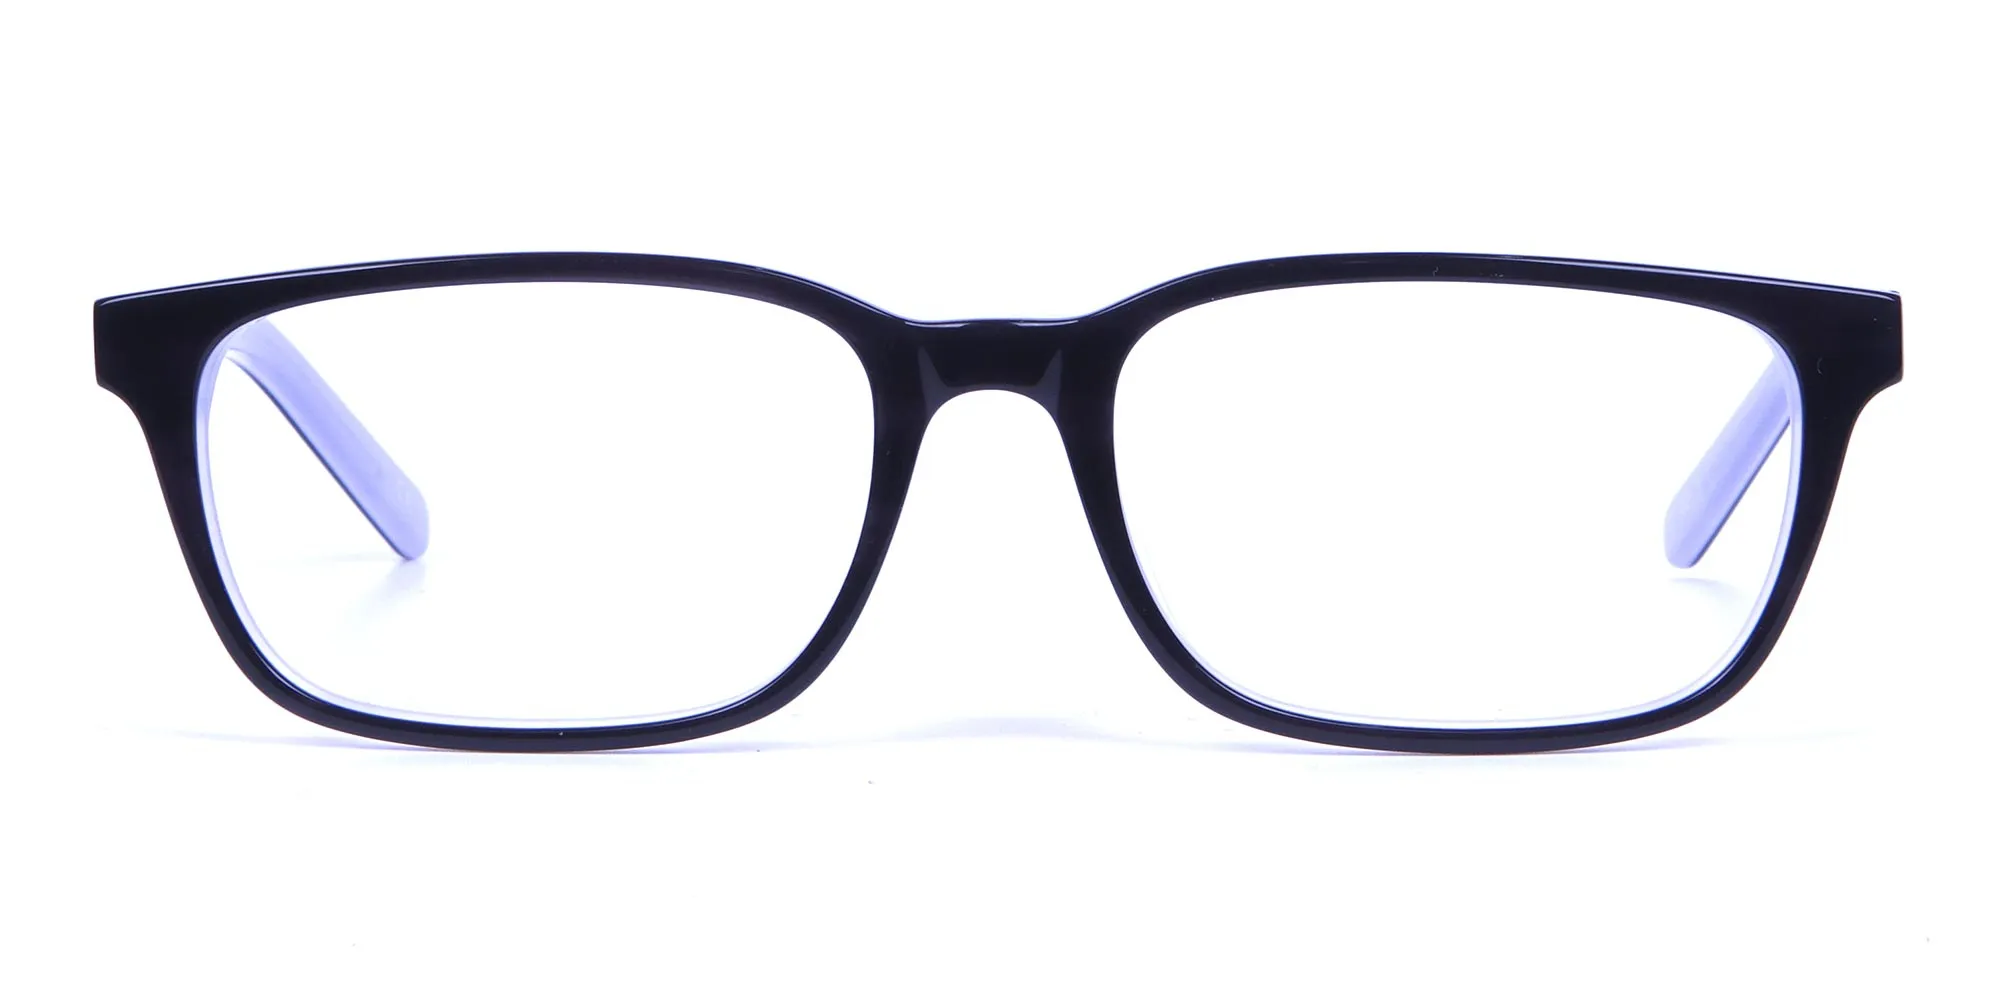 Unisex Black & White Rectangular Glasses - 1